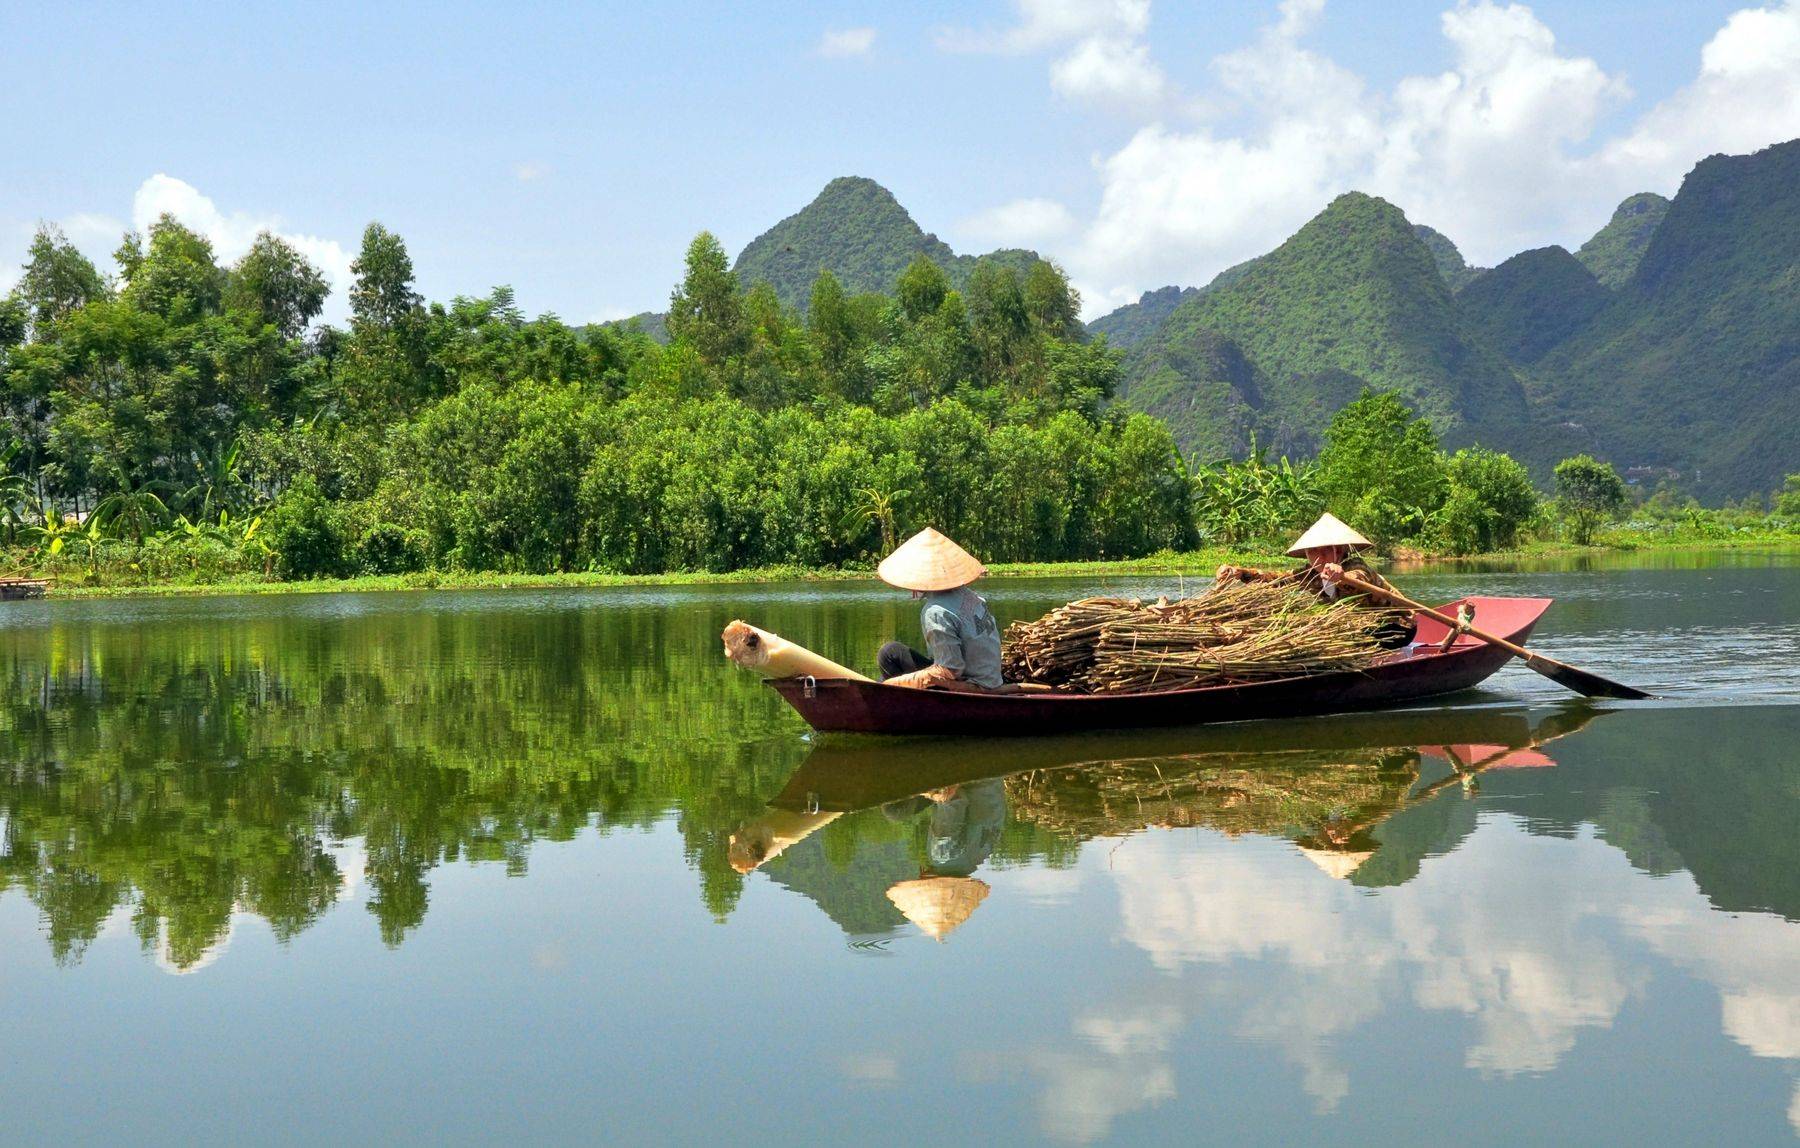 Климат вьетнама по месяцам - курорты вьетнама отзывы, сезон пляжей вьетнама